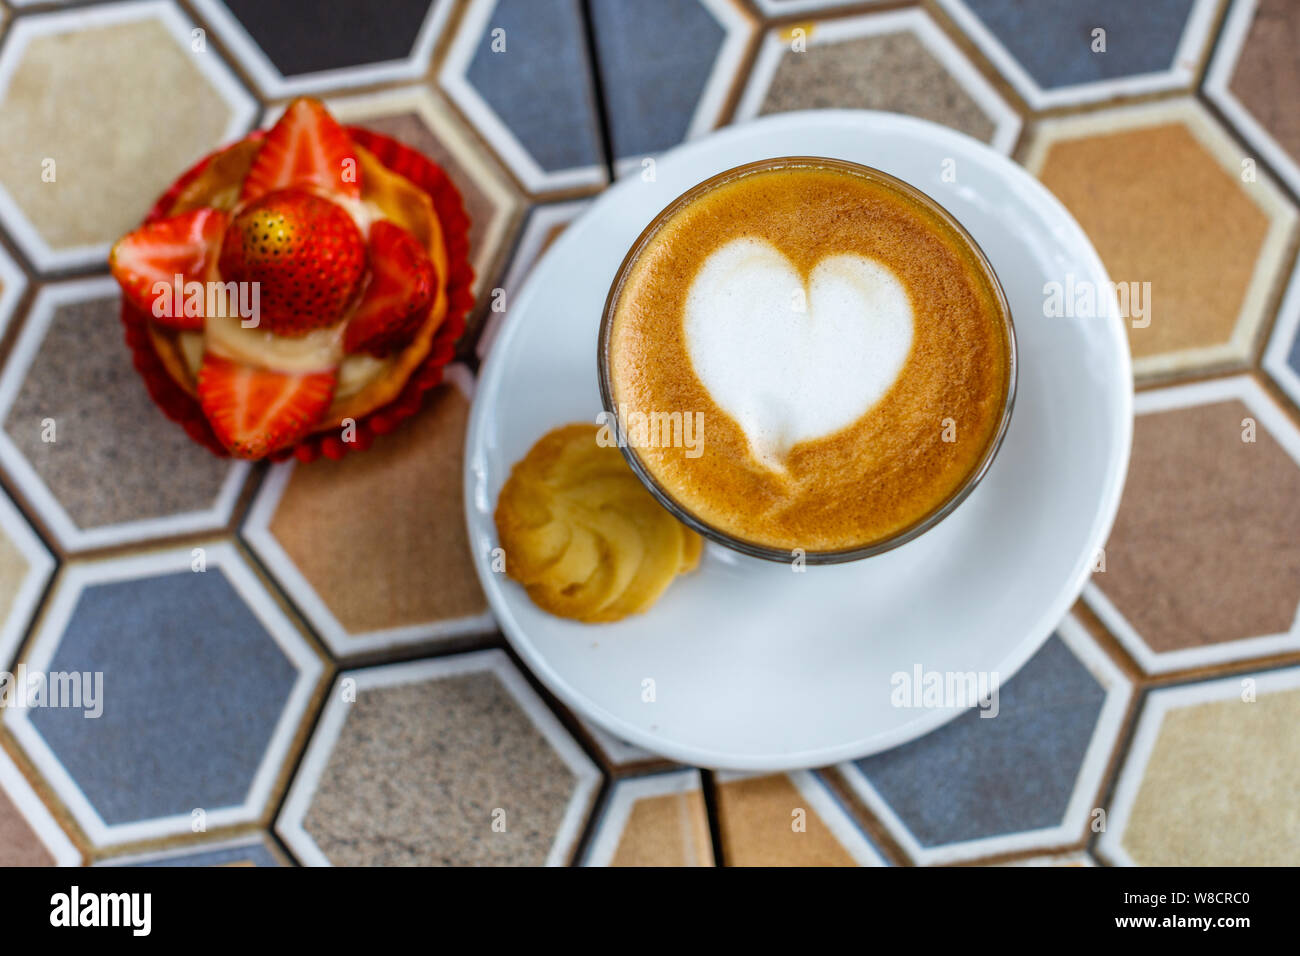 Un verre de café au lait et une tarte aux fraises sur une table en céramique colorée dans un café. Banque D'Images